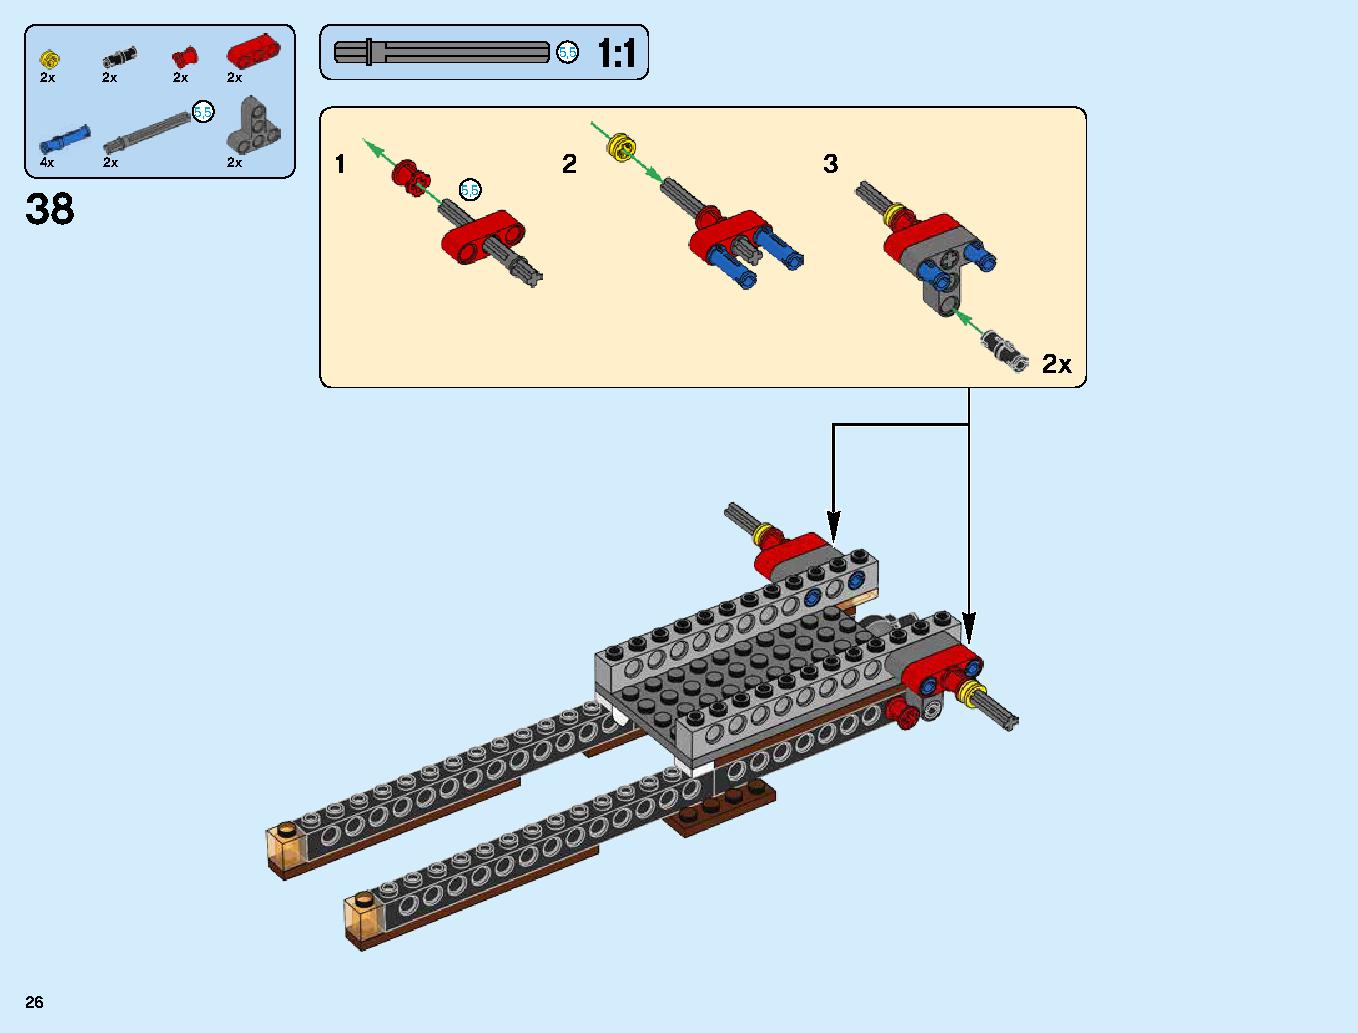 ハンティング・デスストライカー 70654 レゴの商品情報 レゴの説明書・組立方法 26 page